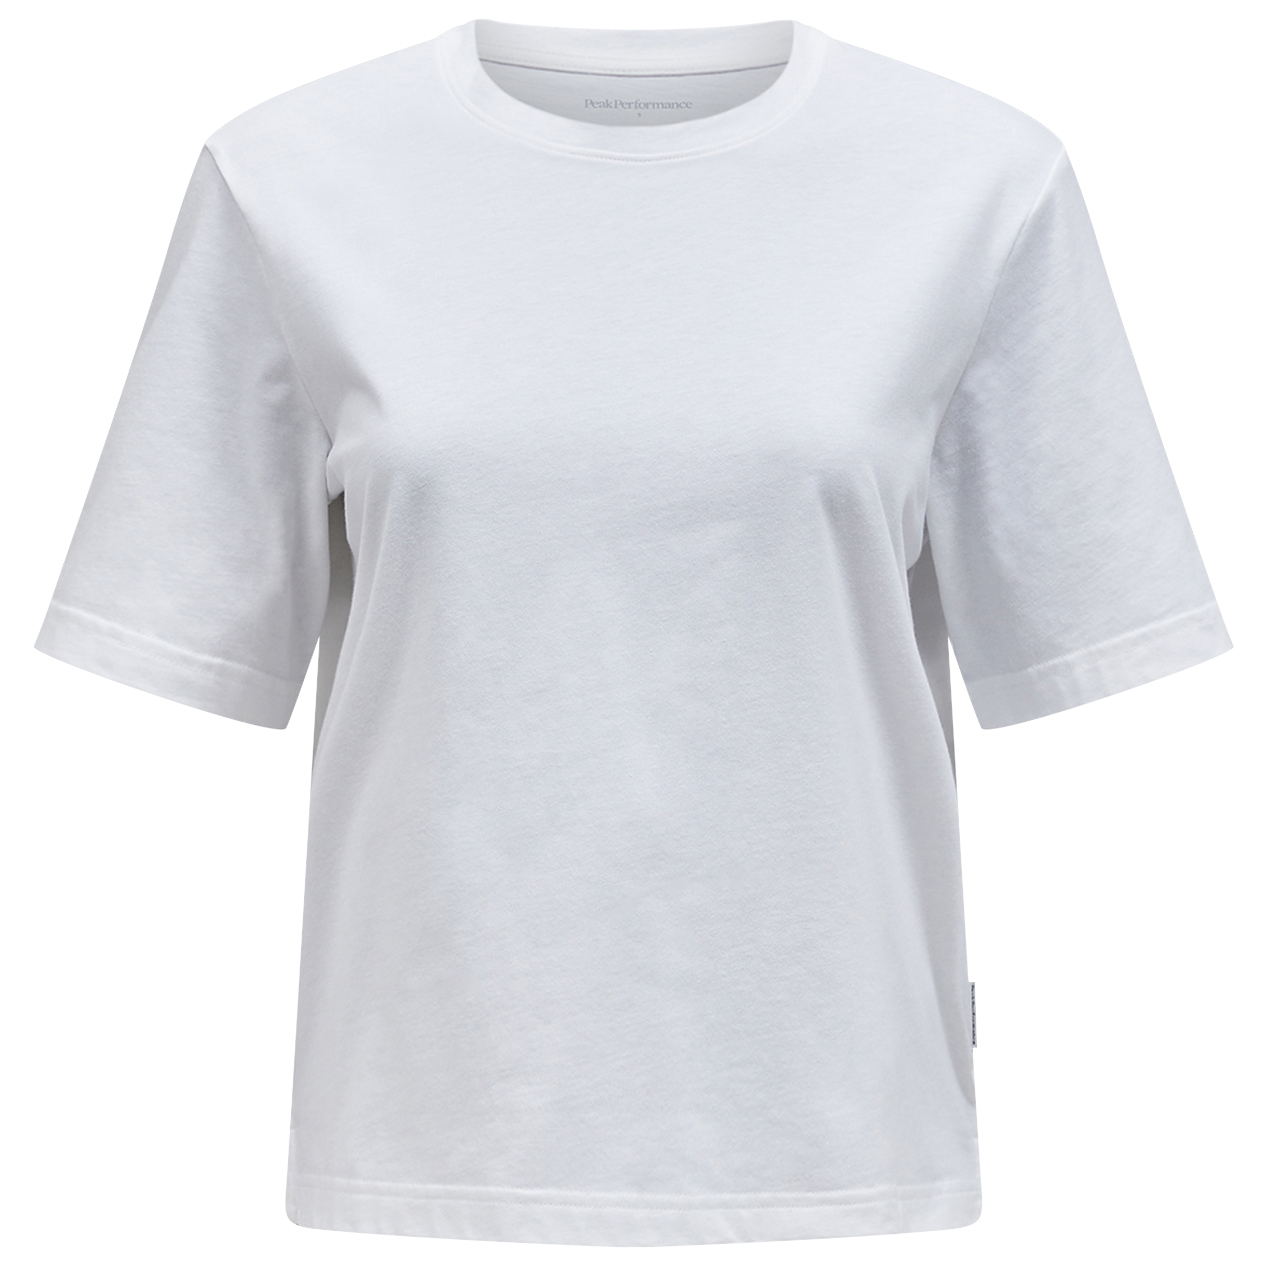 Функциональная рубашка Peak Performance Women's Coolmax Cotton Tee, цвет Offwhite